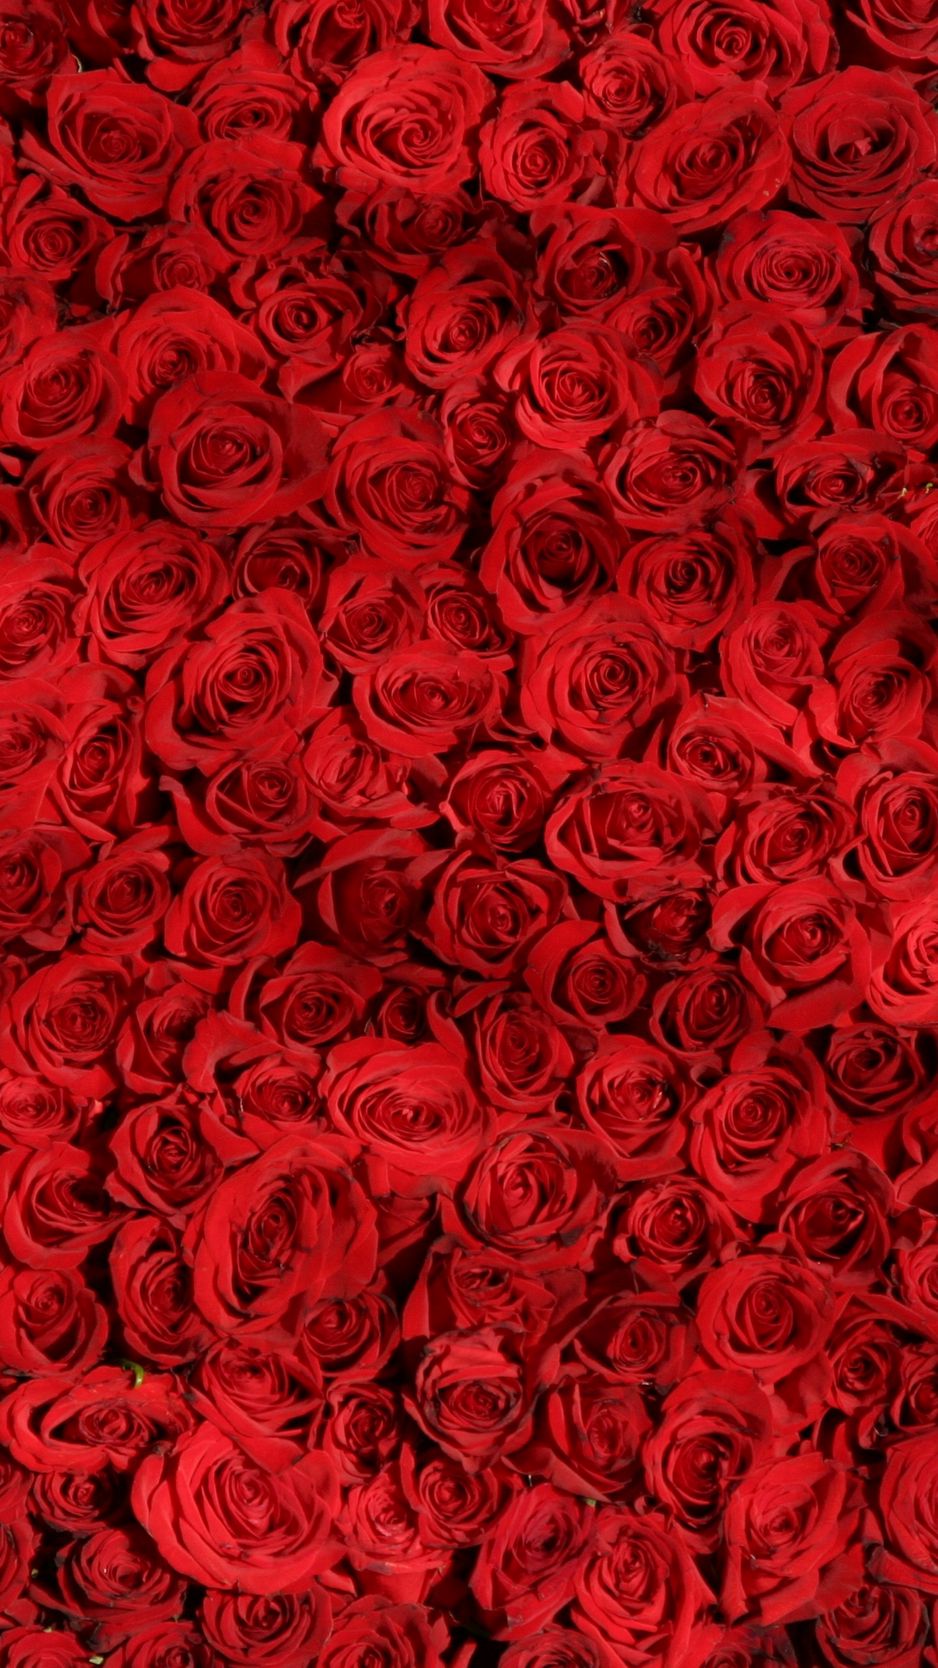 Фото Красивая роза, более 98 качественных бесплатных стоковых фото